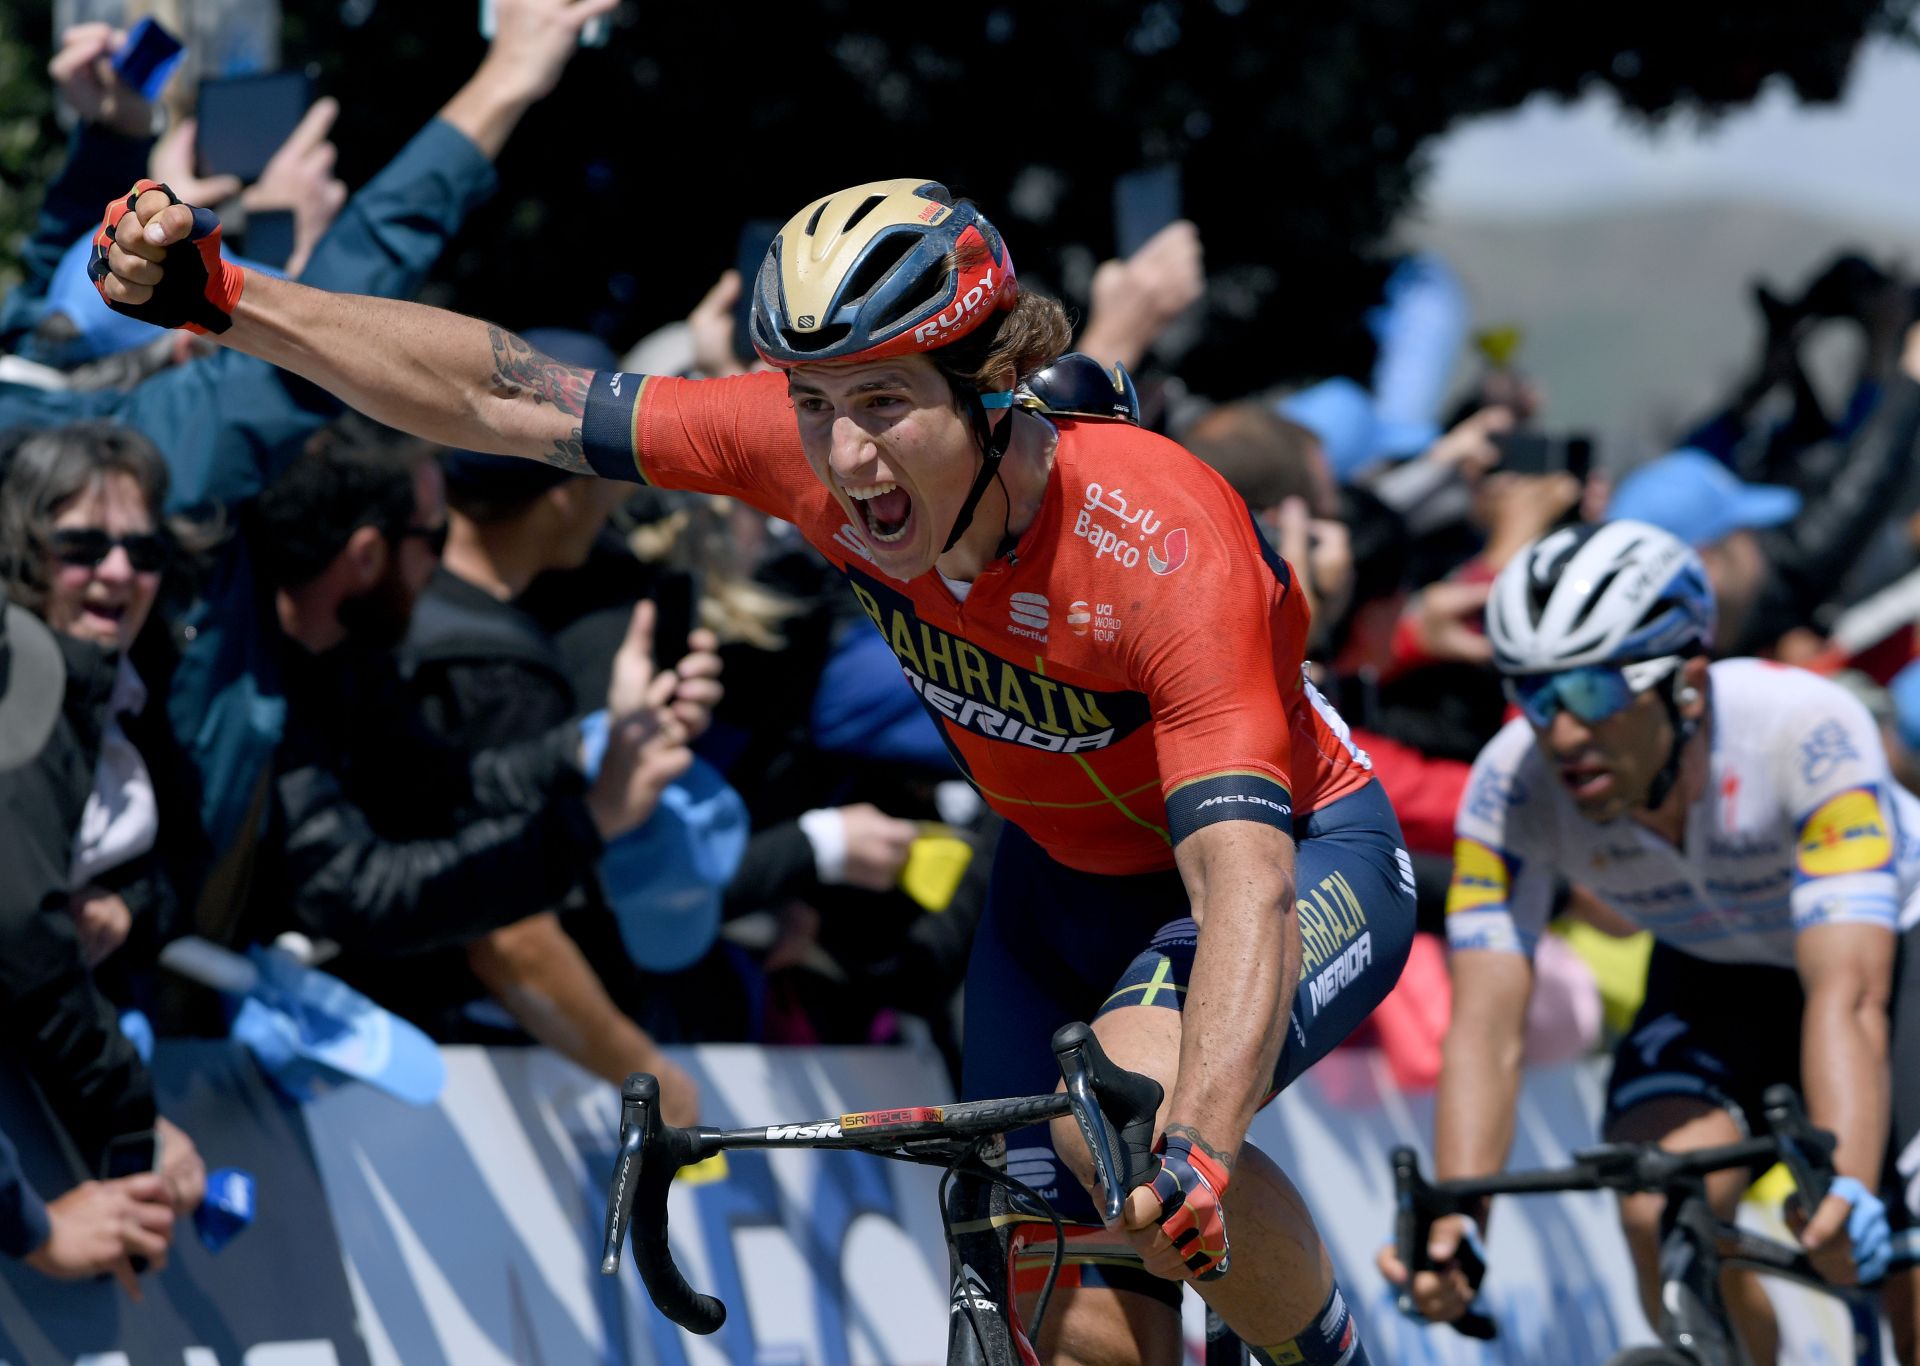 Tour of California 2019: etap 5. Ivan Garcia Cortina pośród chaosu